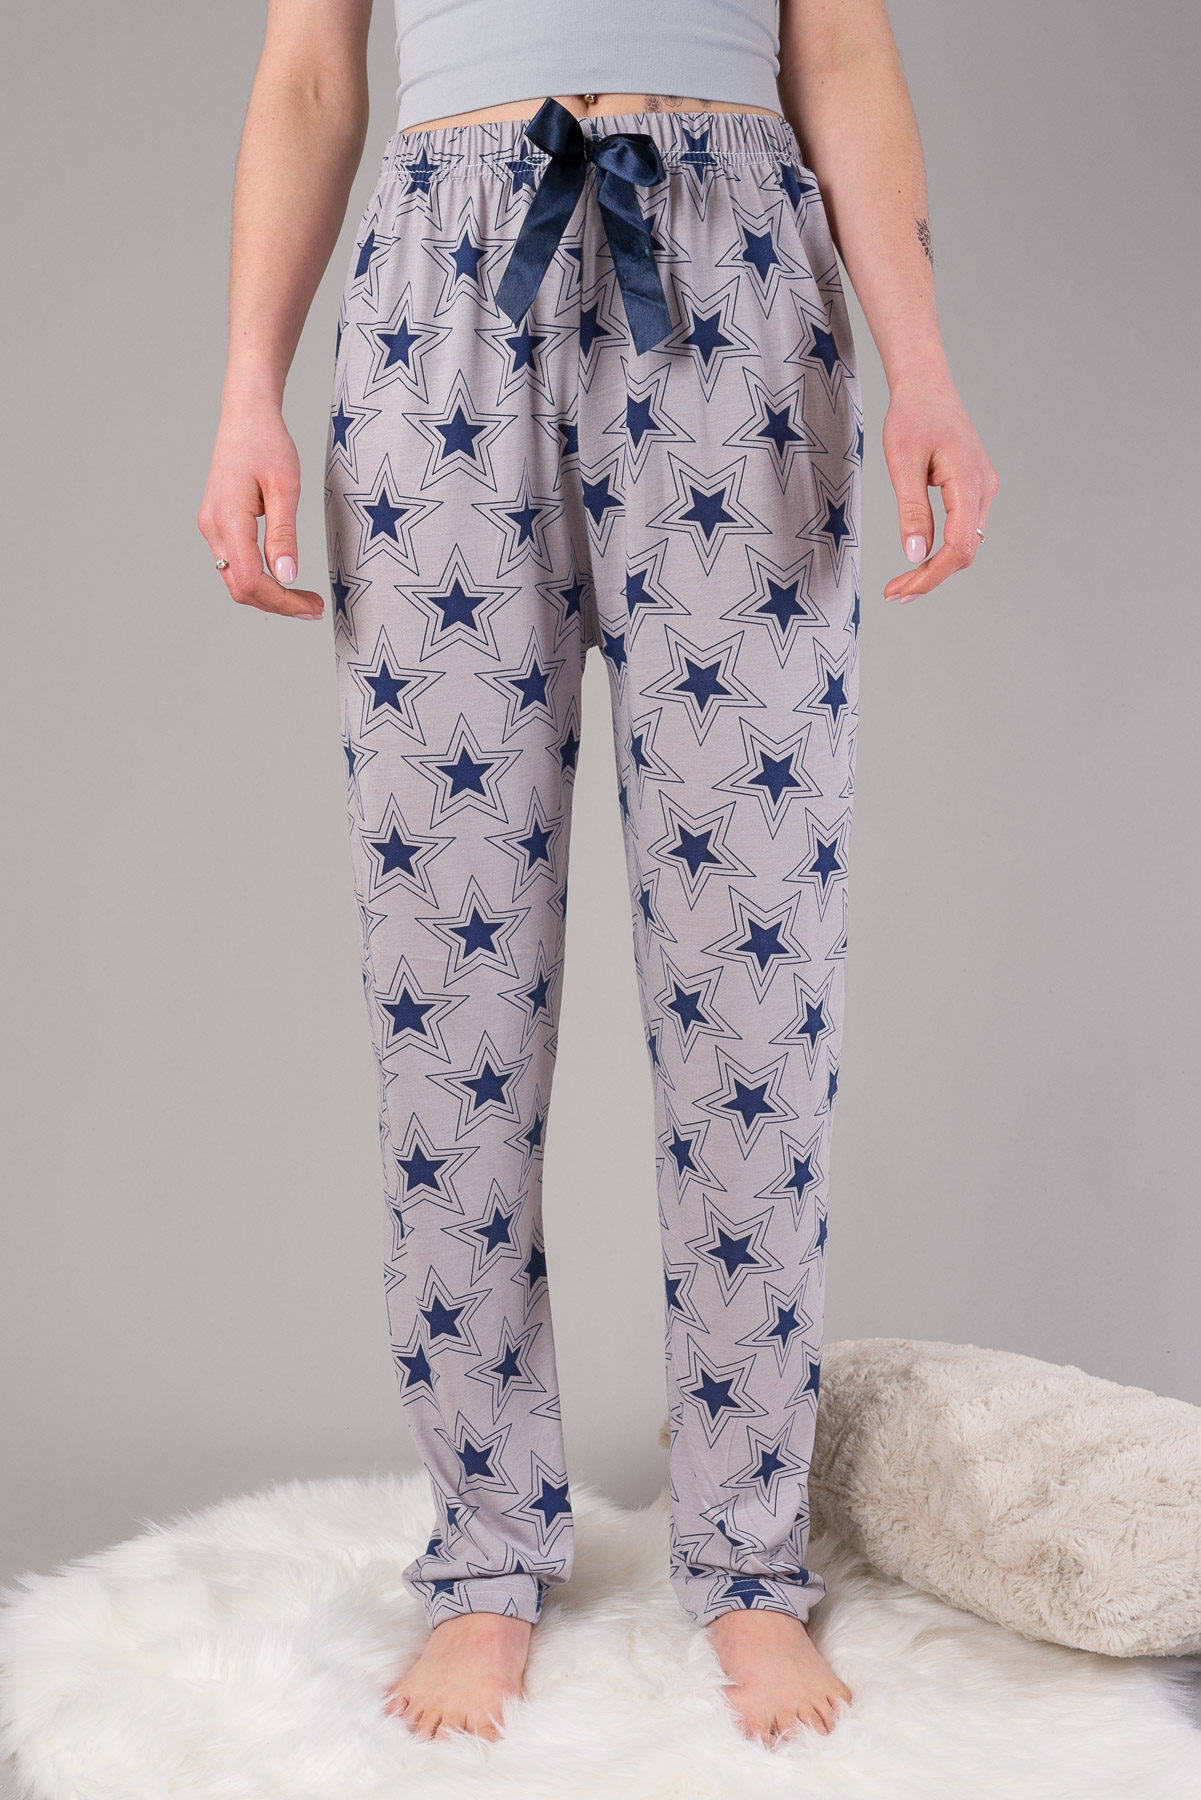 Pyžamové nohavice HVIEZDY - sivé